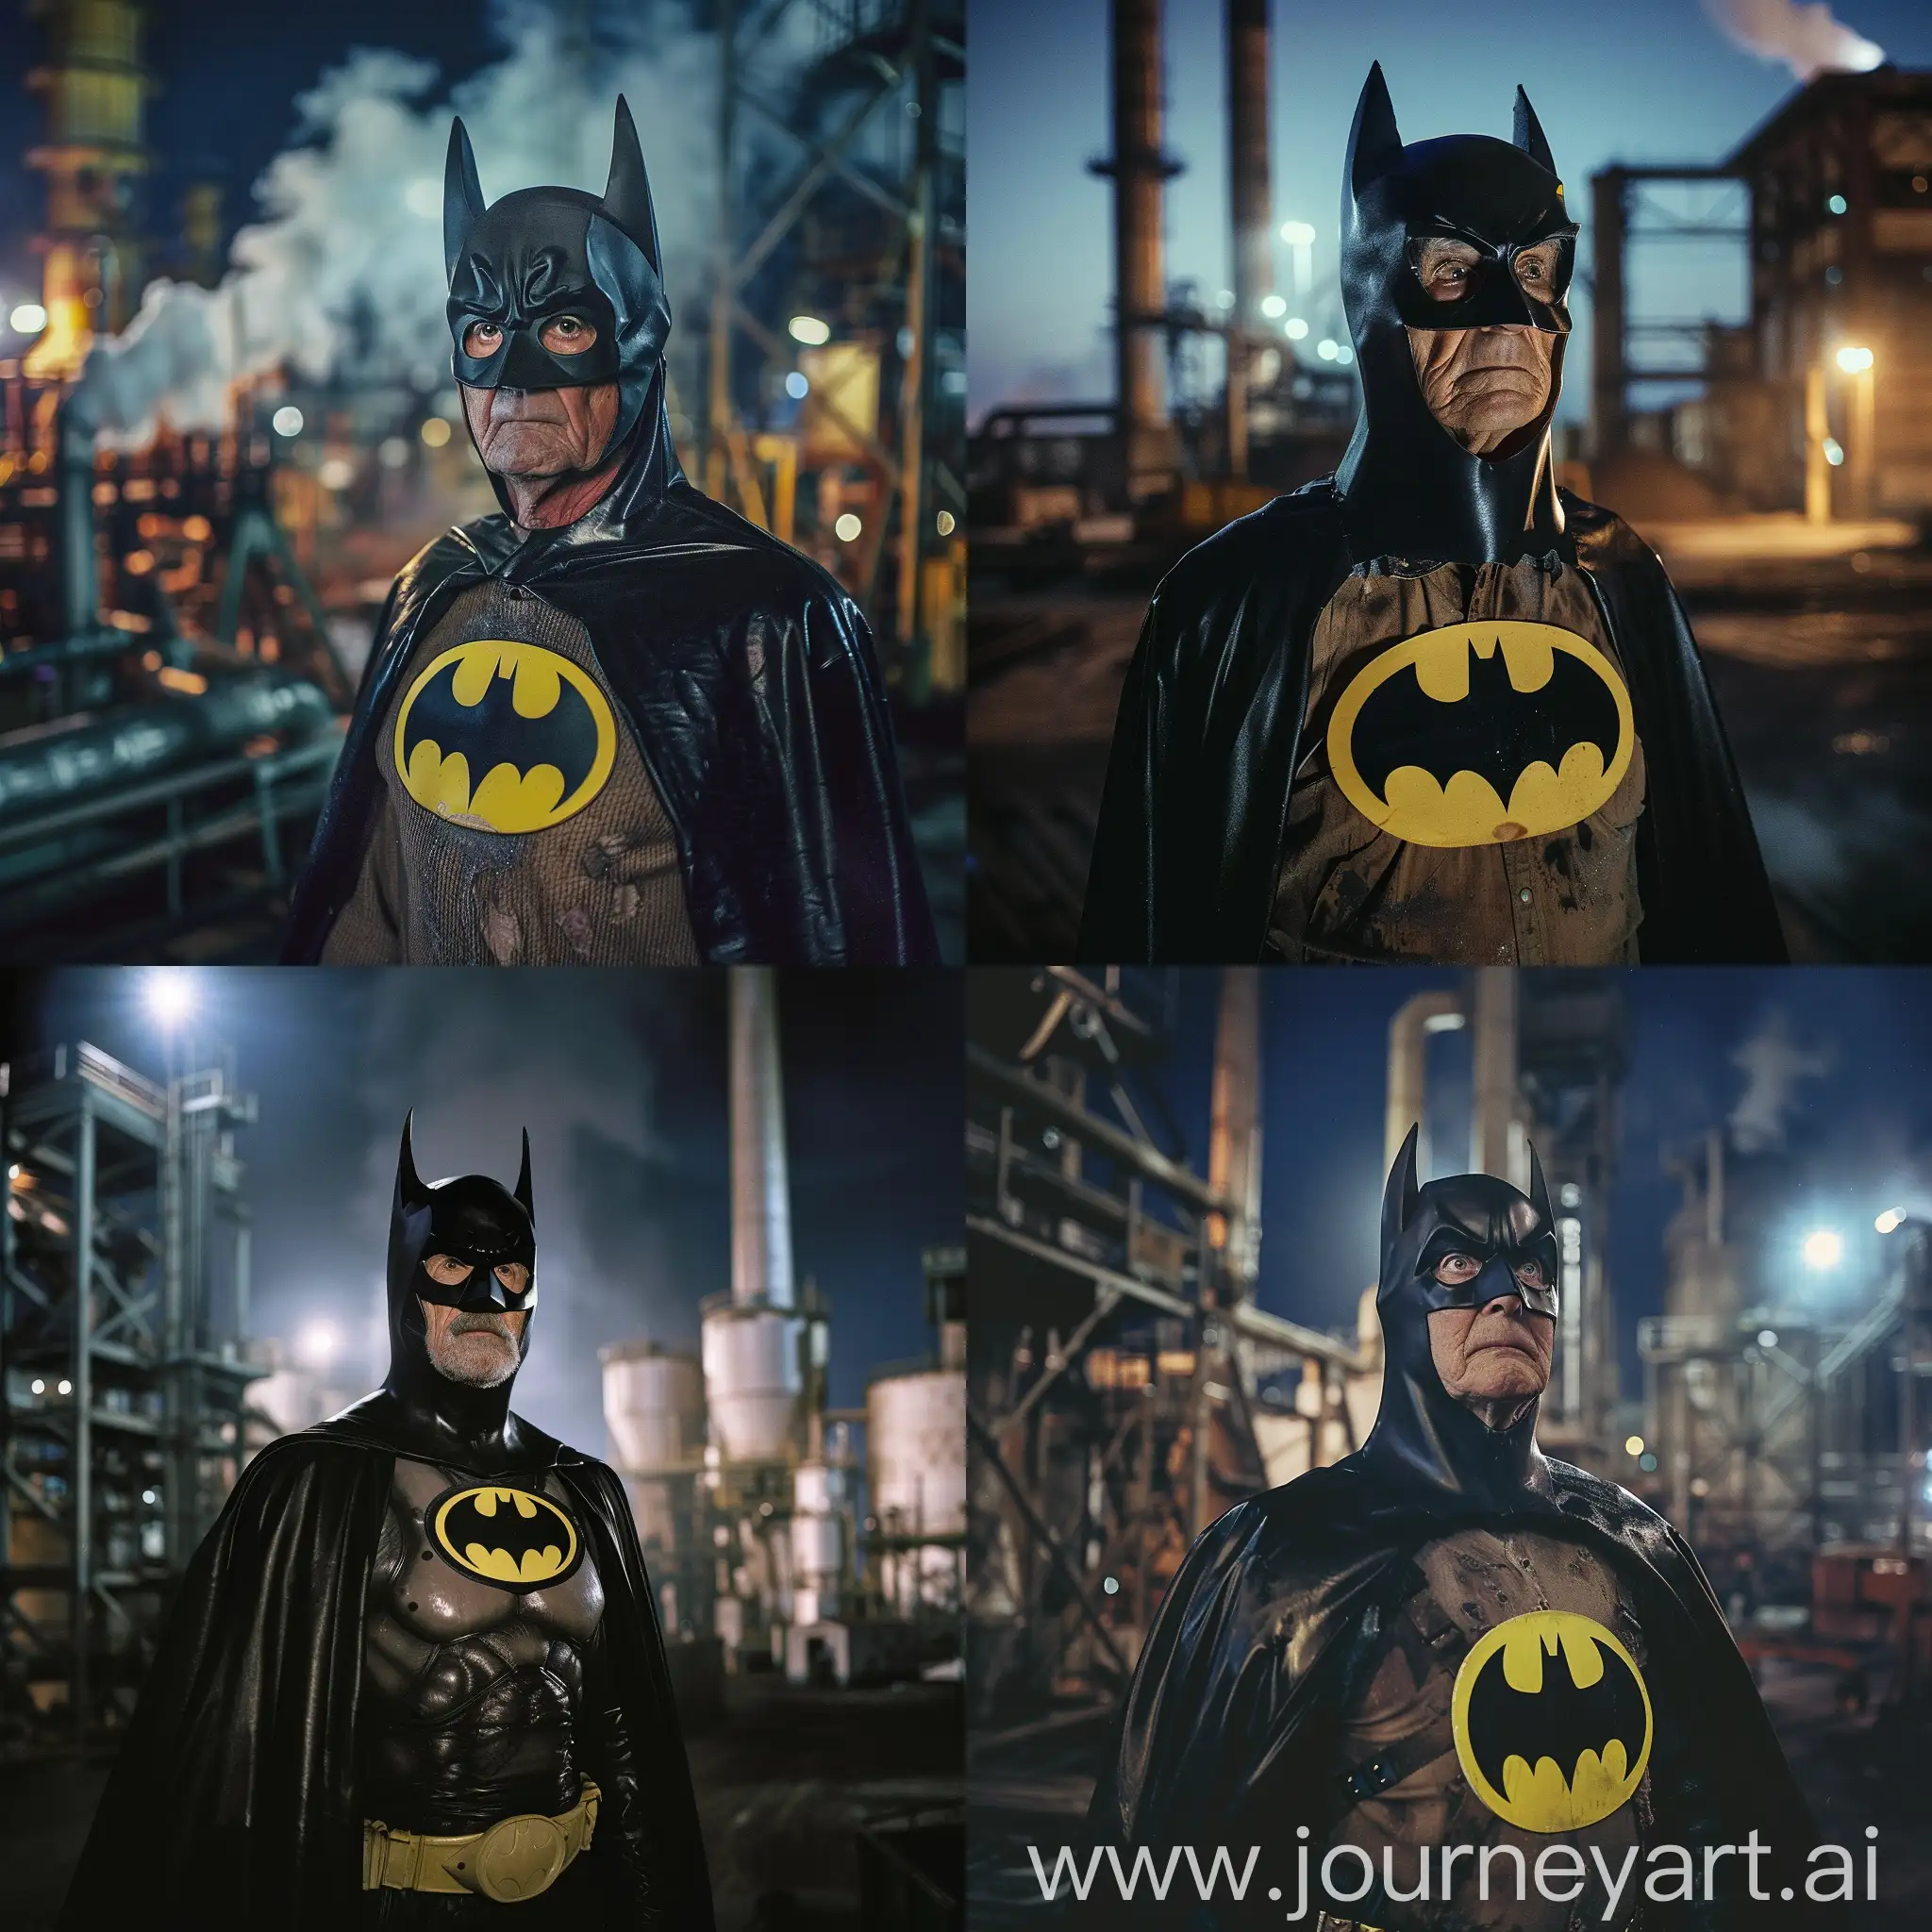 Elderly-Man-Dressed-as-Batman-in-Nighttime-Factory-Scene